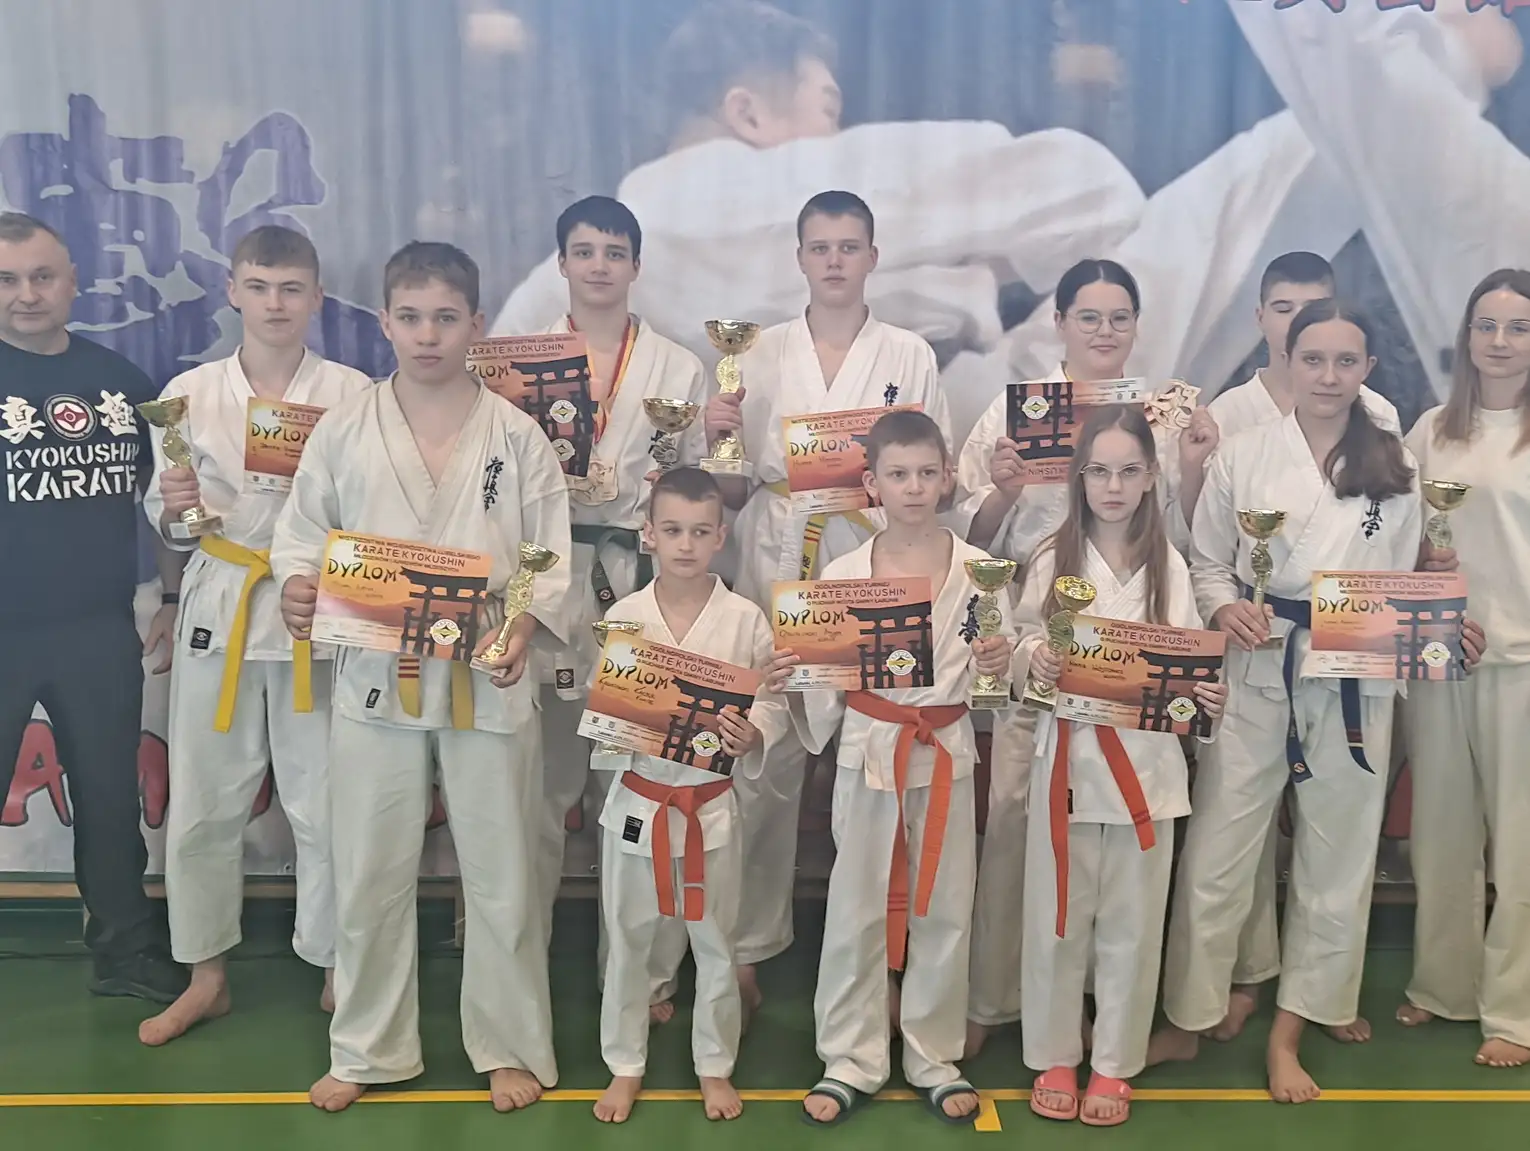 Nasi karatecy triumfują w Łabuniach